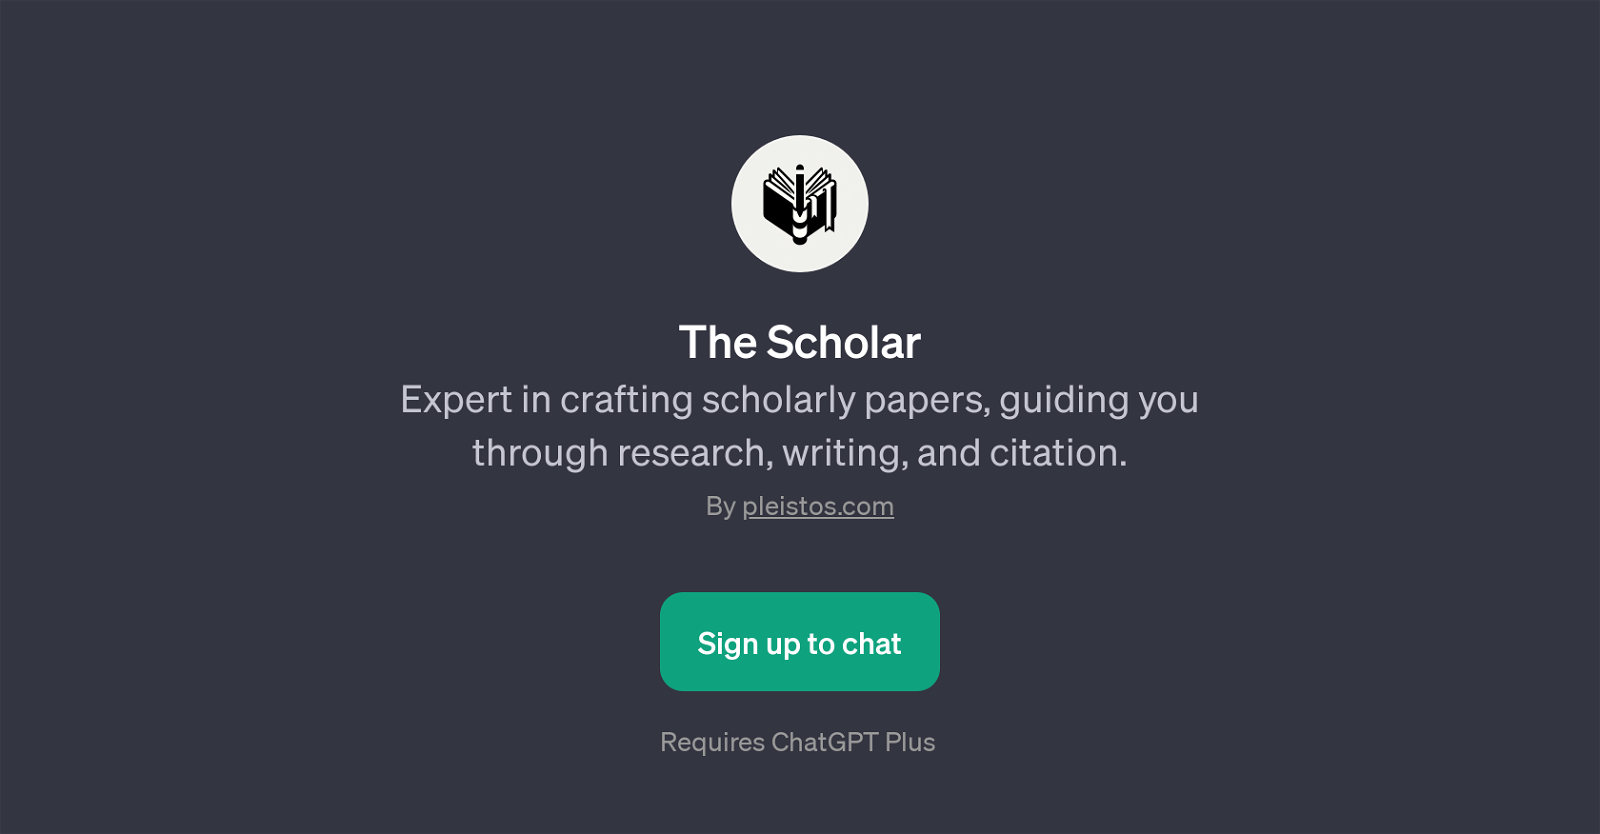 The Scholar website